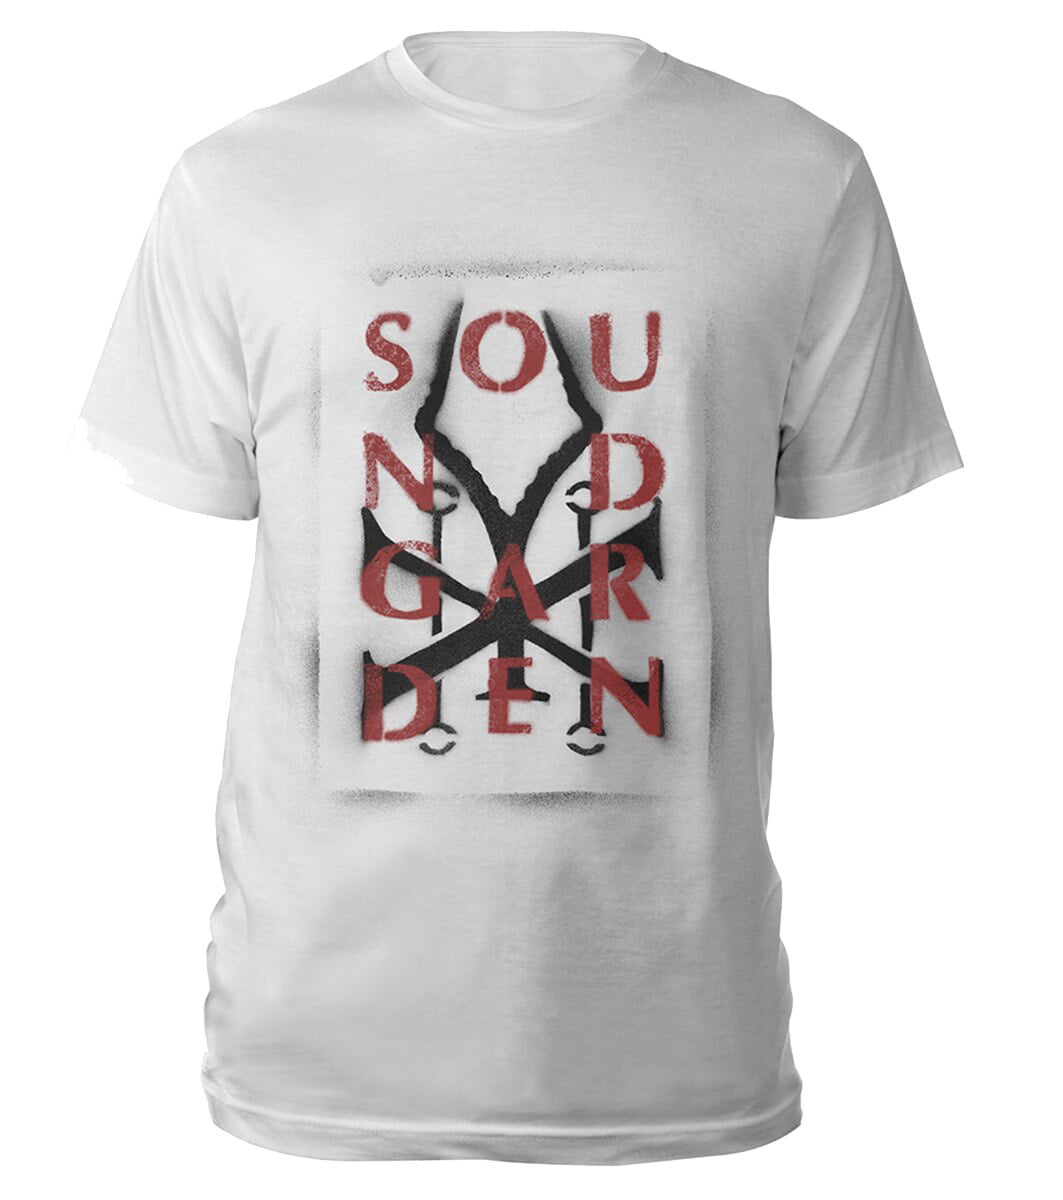 Soundgarden Men's Spray Paint Logo Slim Fit T-shirt Medium White